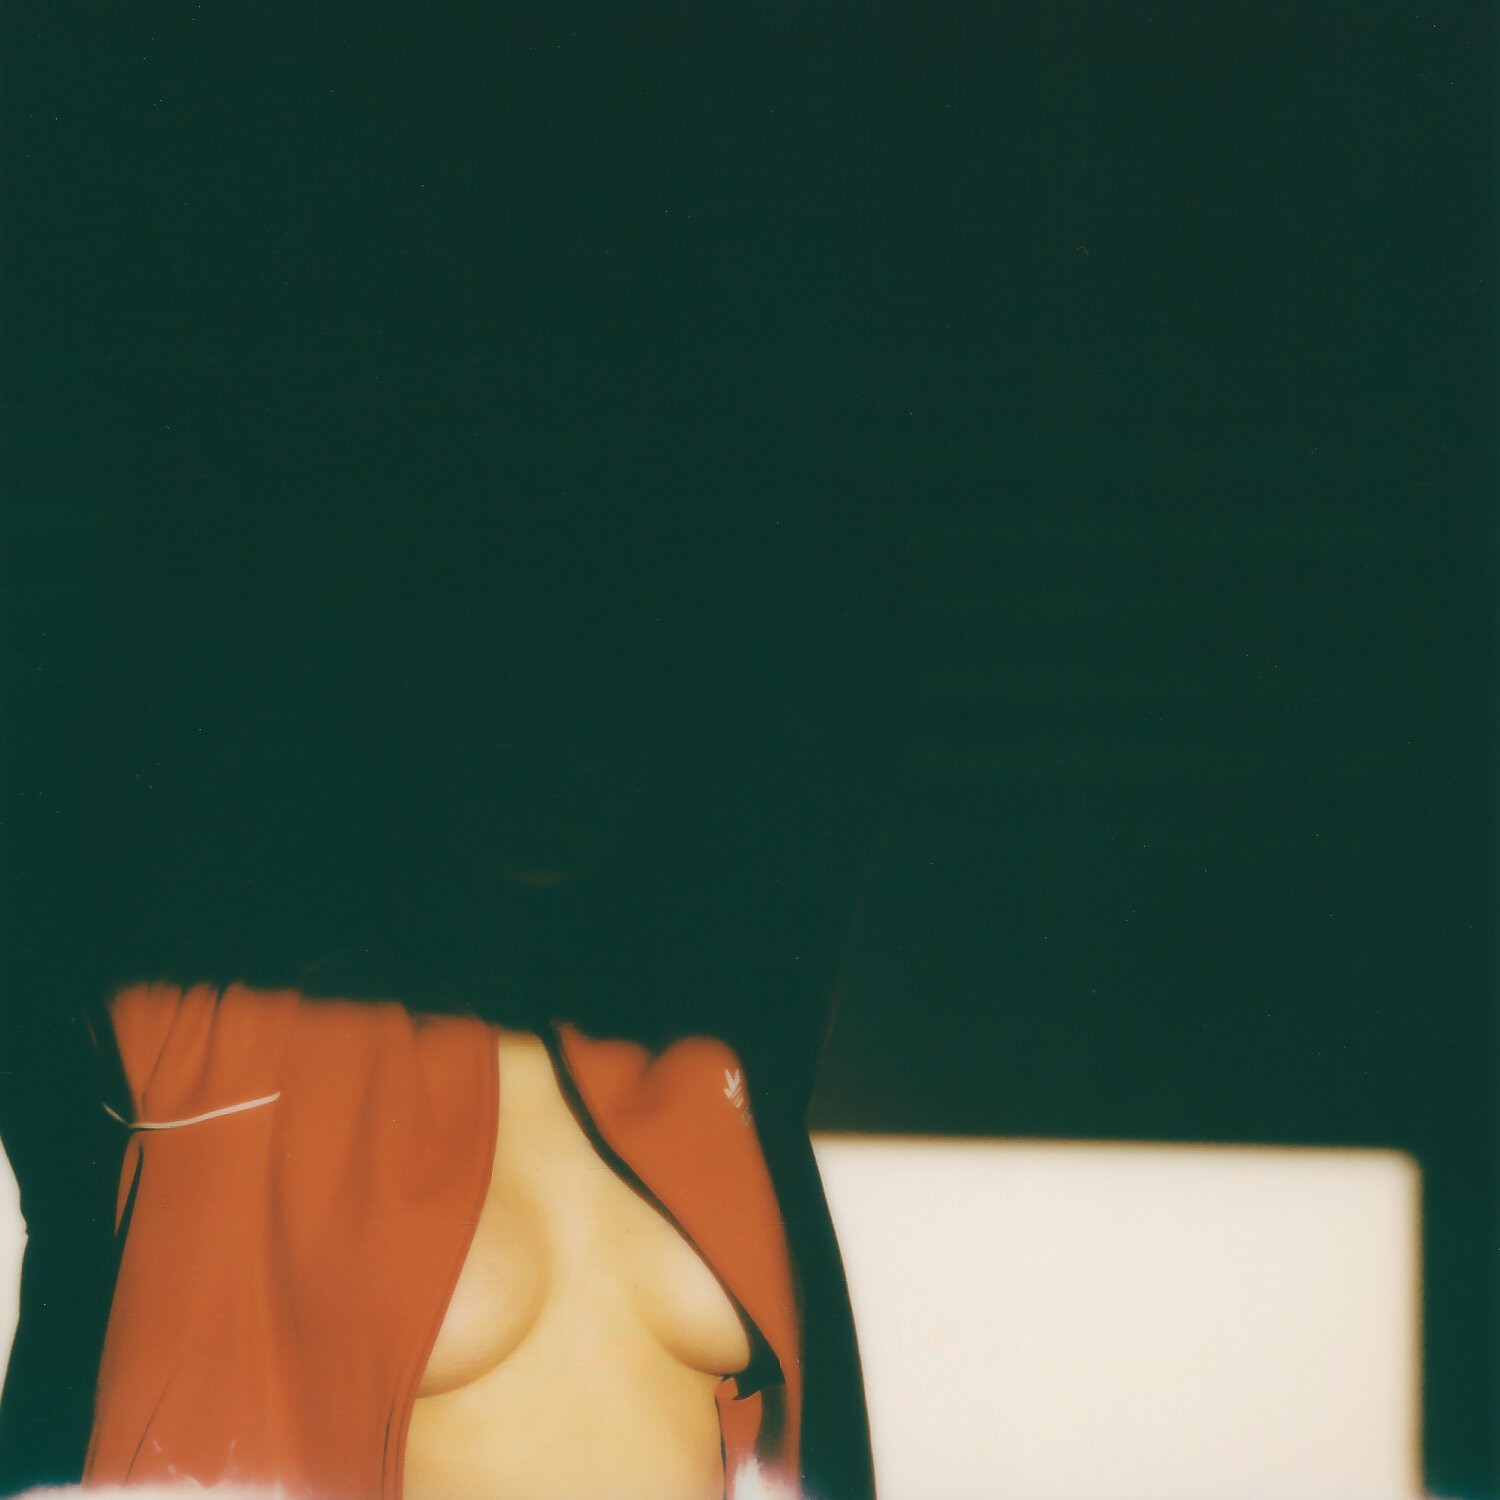 Красная кофточка. Фотограф Франческо Самбати